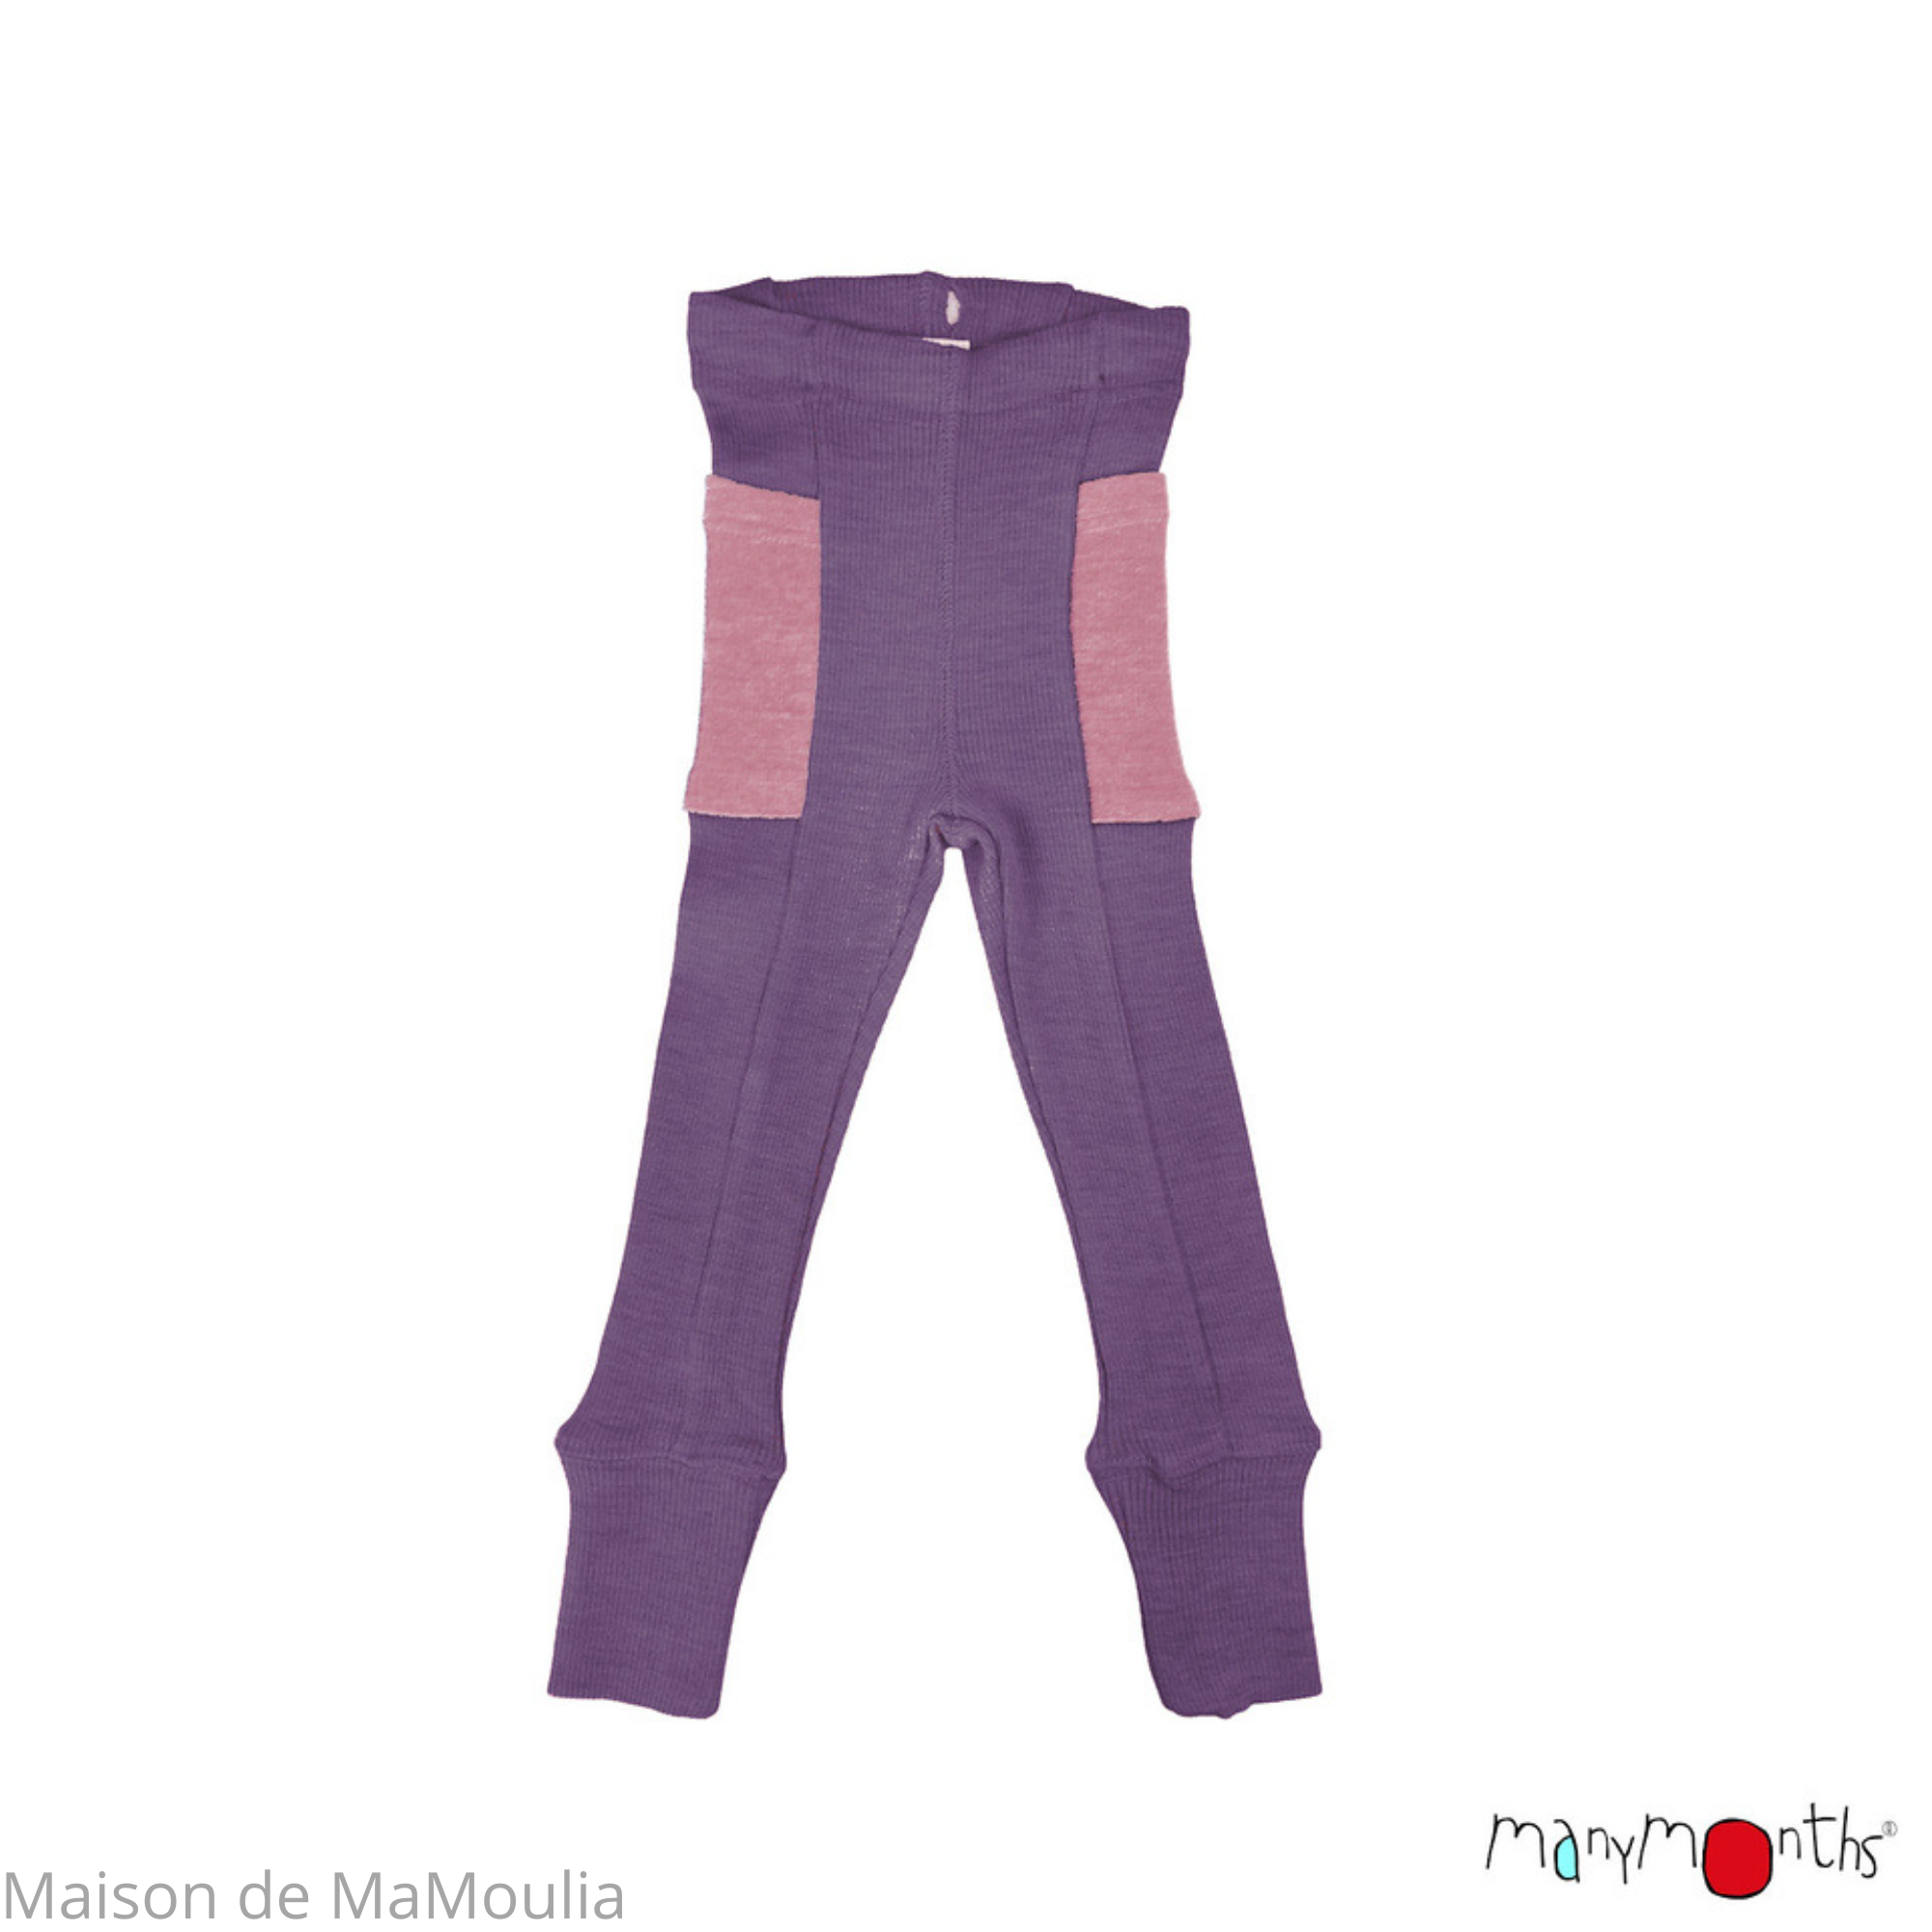 manymonths-legging-ajustable-poches-evolutif-enfant-laine-merinos-maison-de-mamoulia-dusty-grape-violet